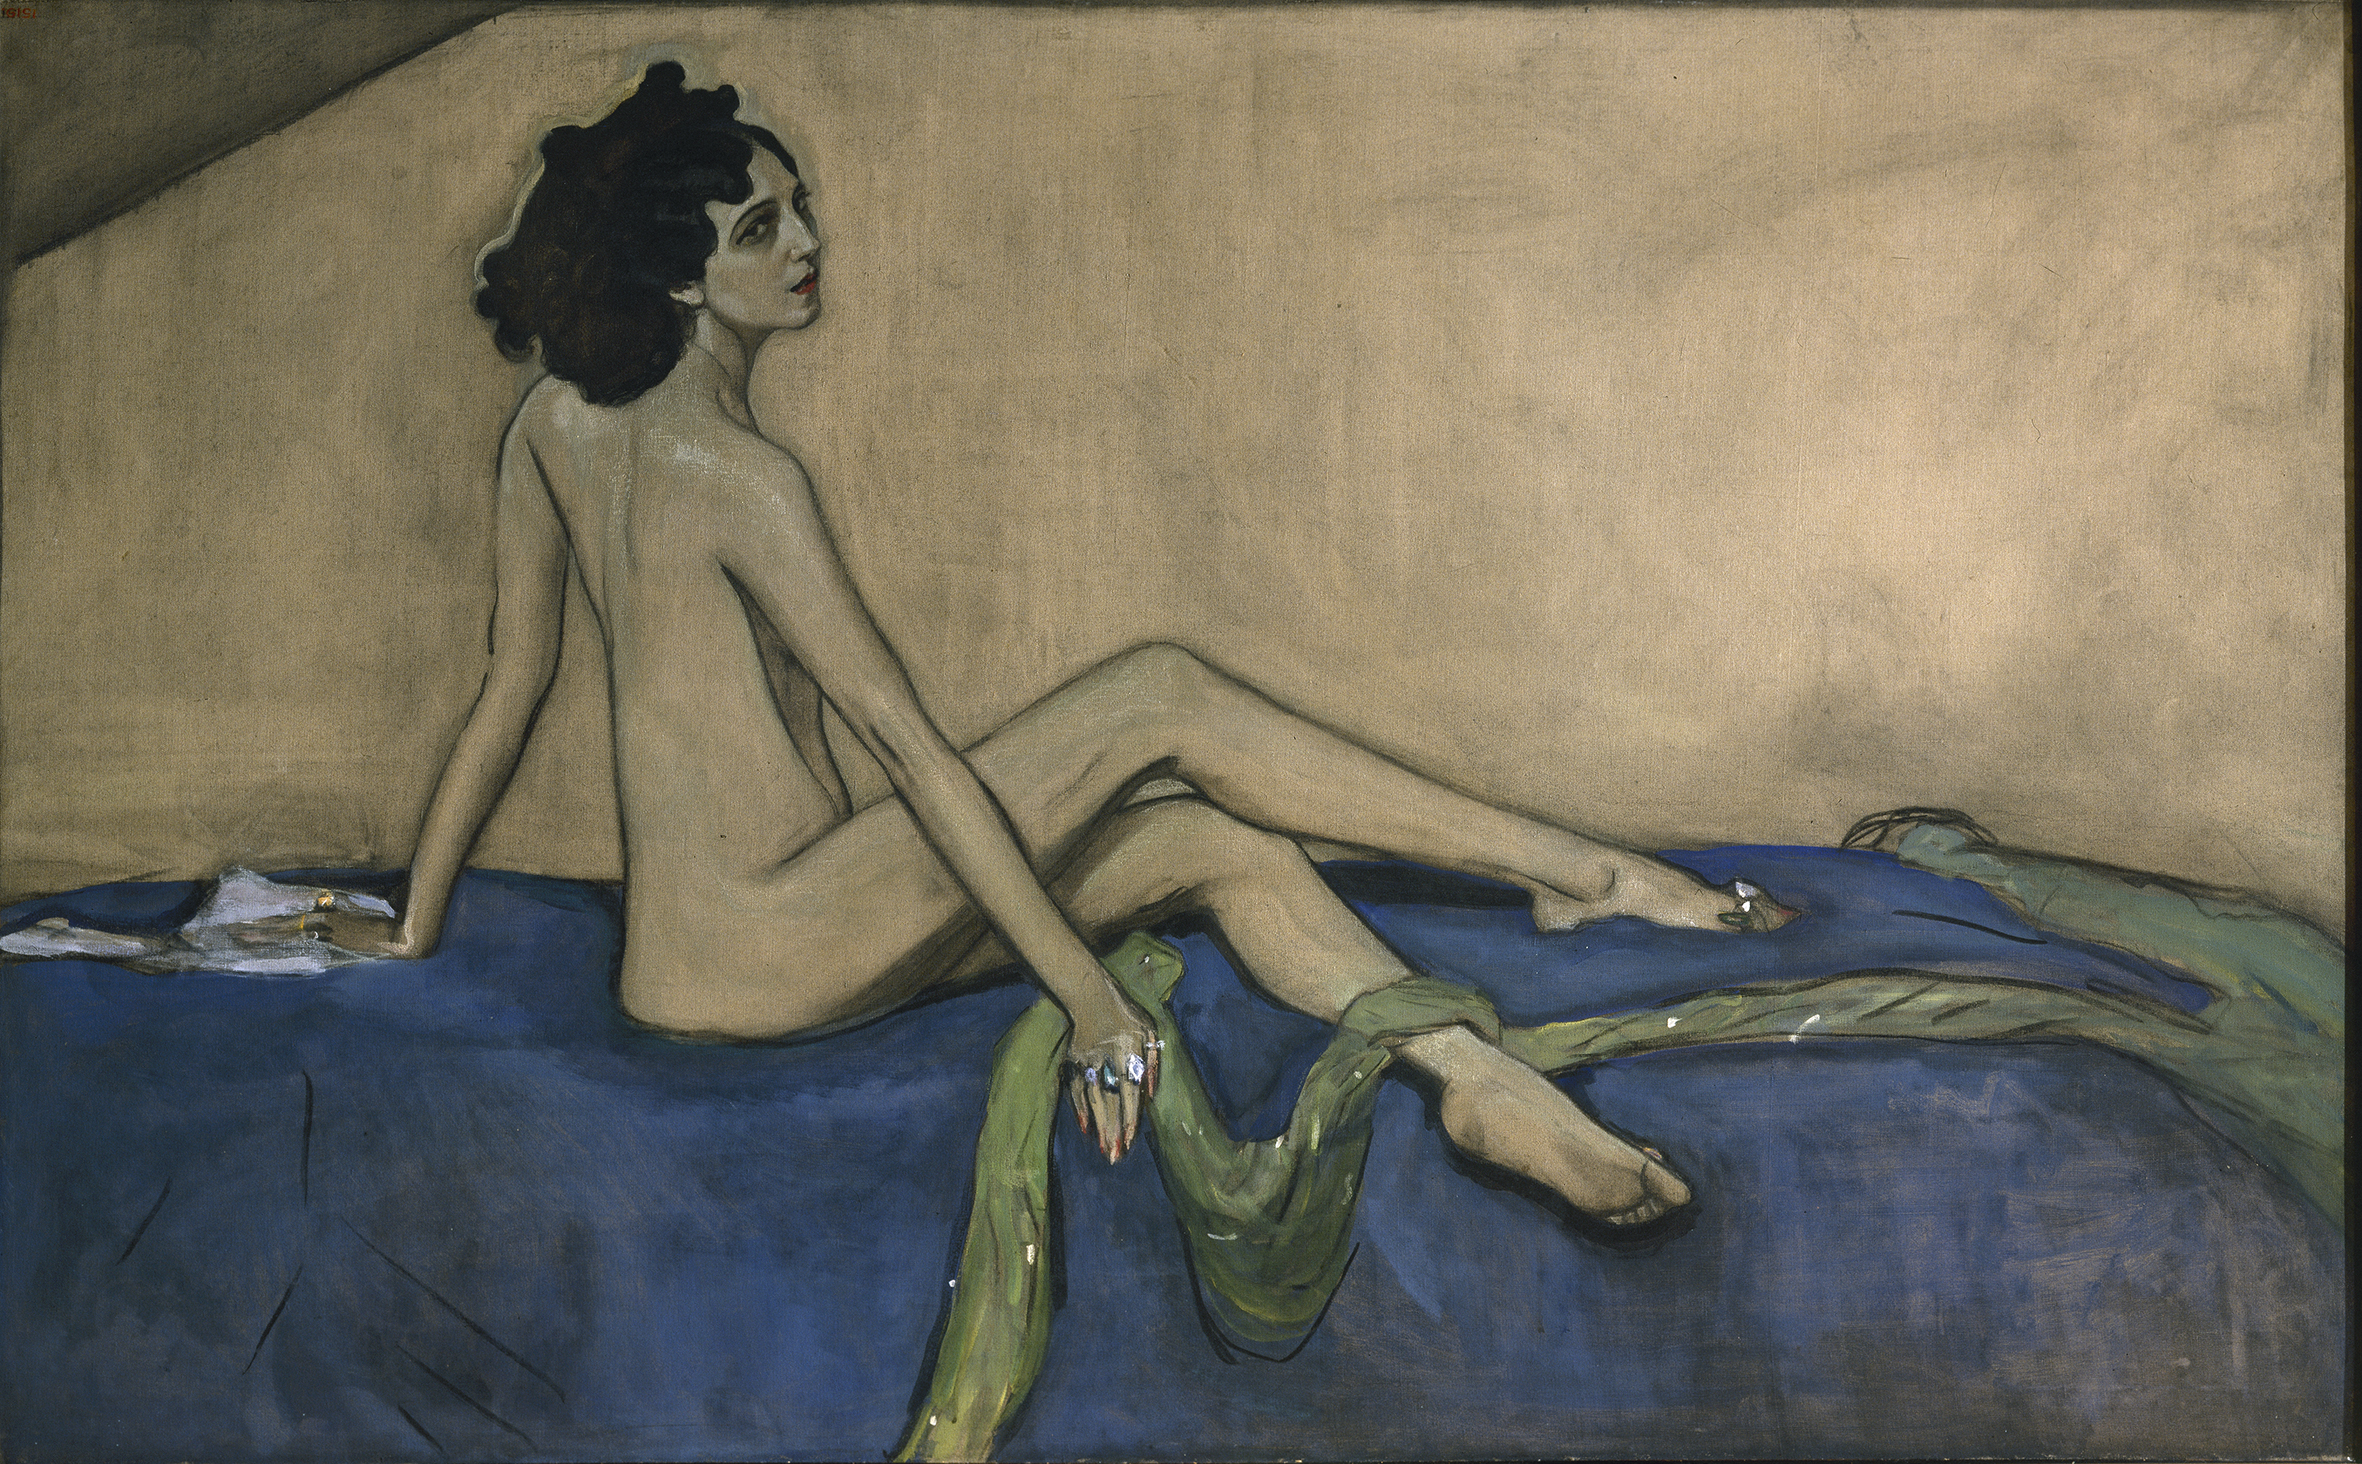 Ида Рубинштейн by Valentin Serov - 1910 - 147 x 233 cm 